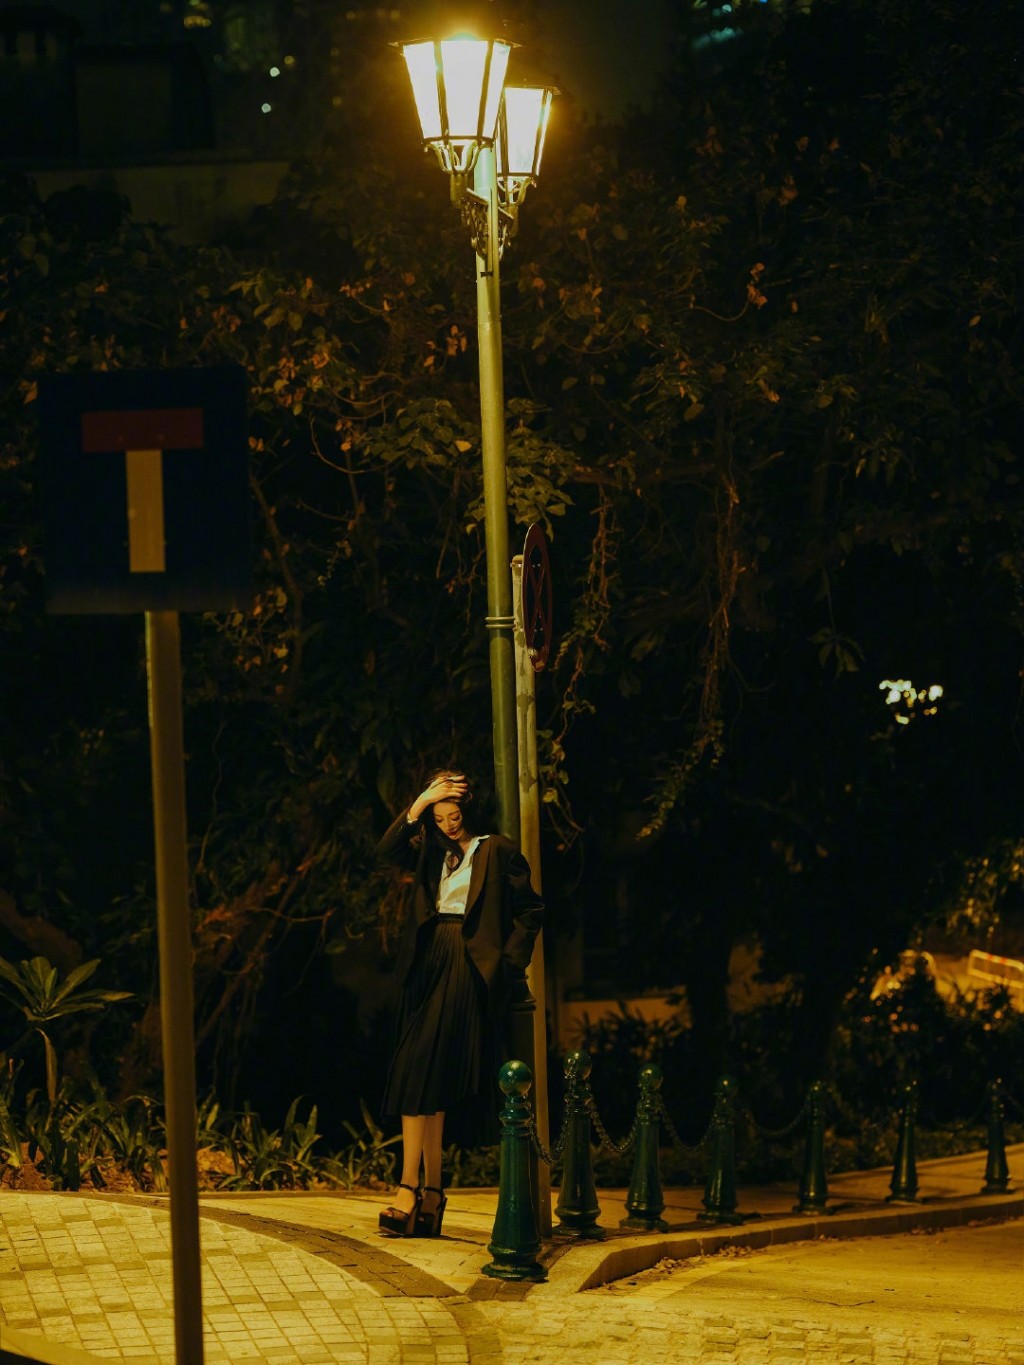 迪丽热巴黑色套装夜色街角写真